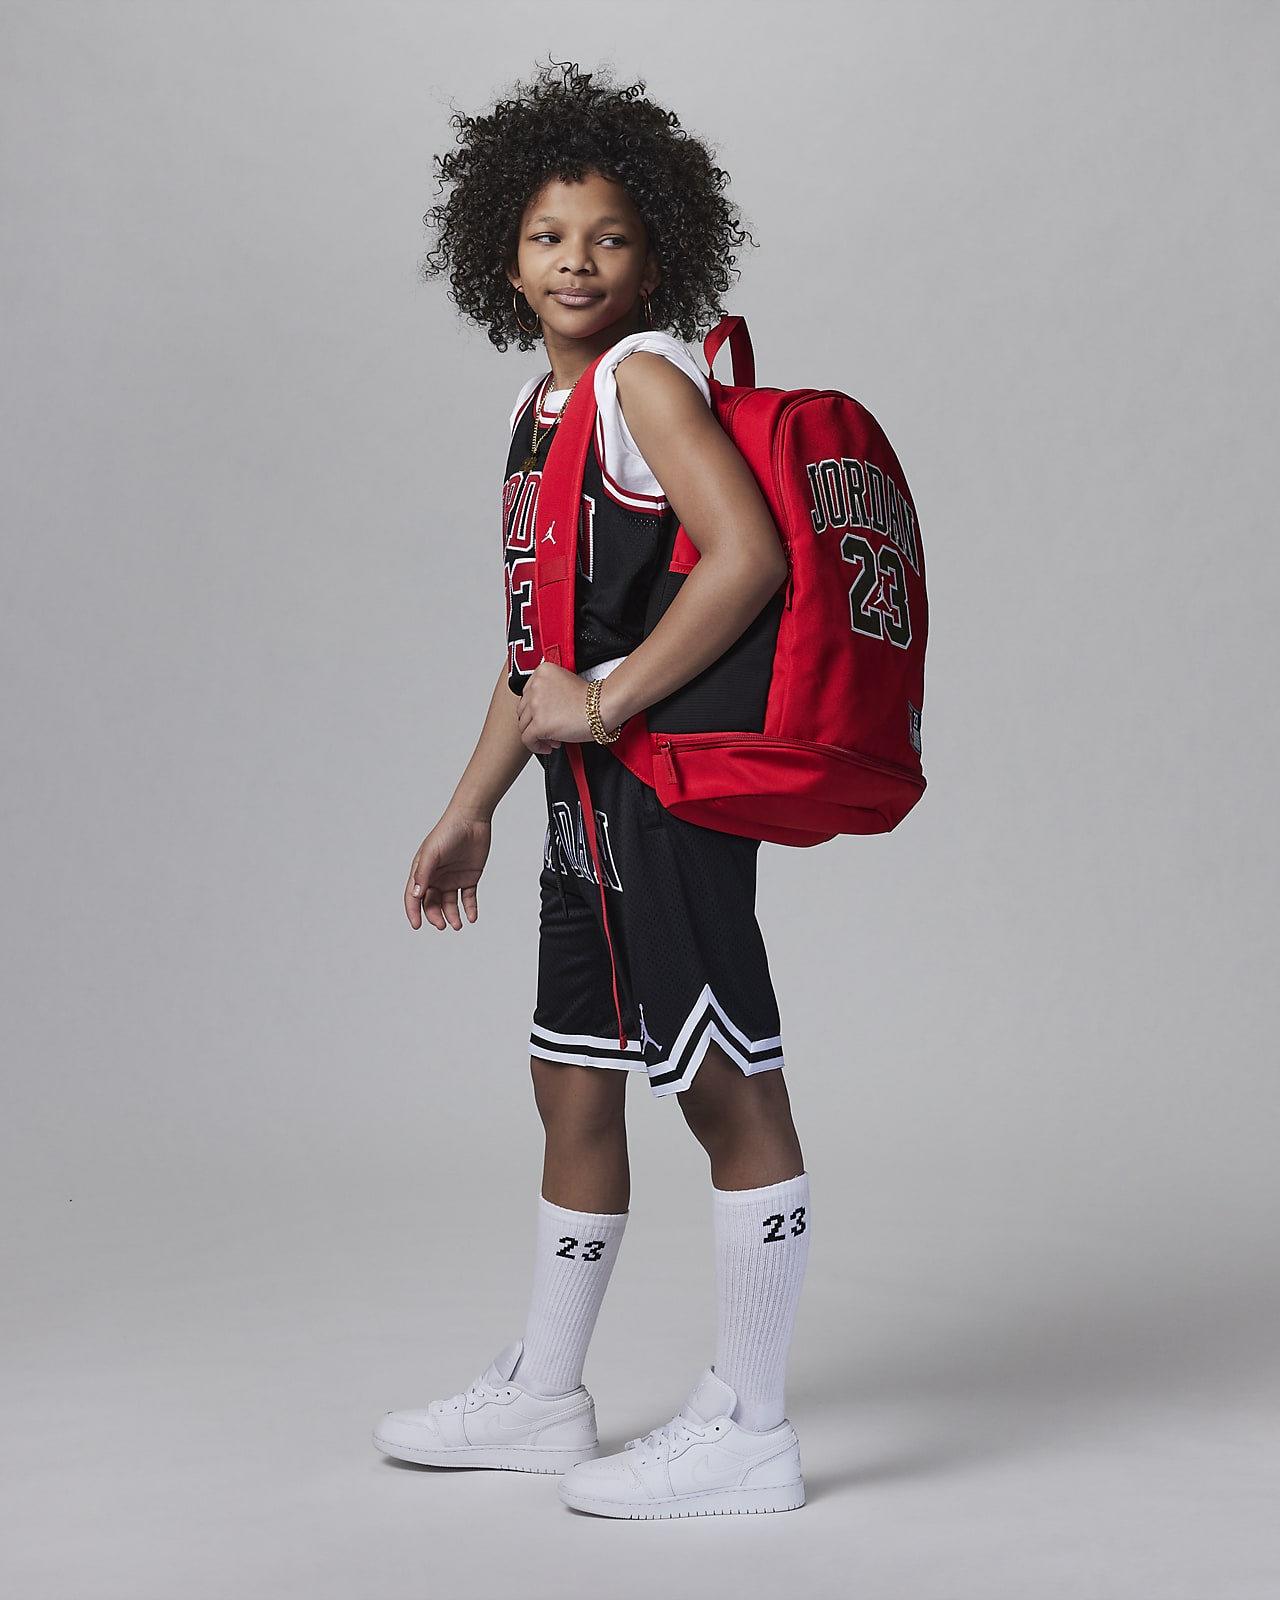 Jordan Jersey Backpack Big Kids' Backpack (27L).